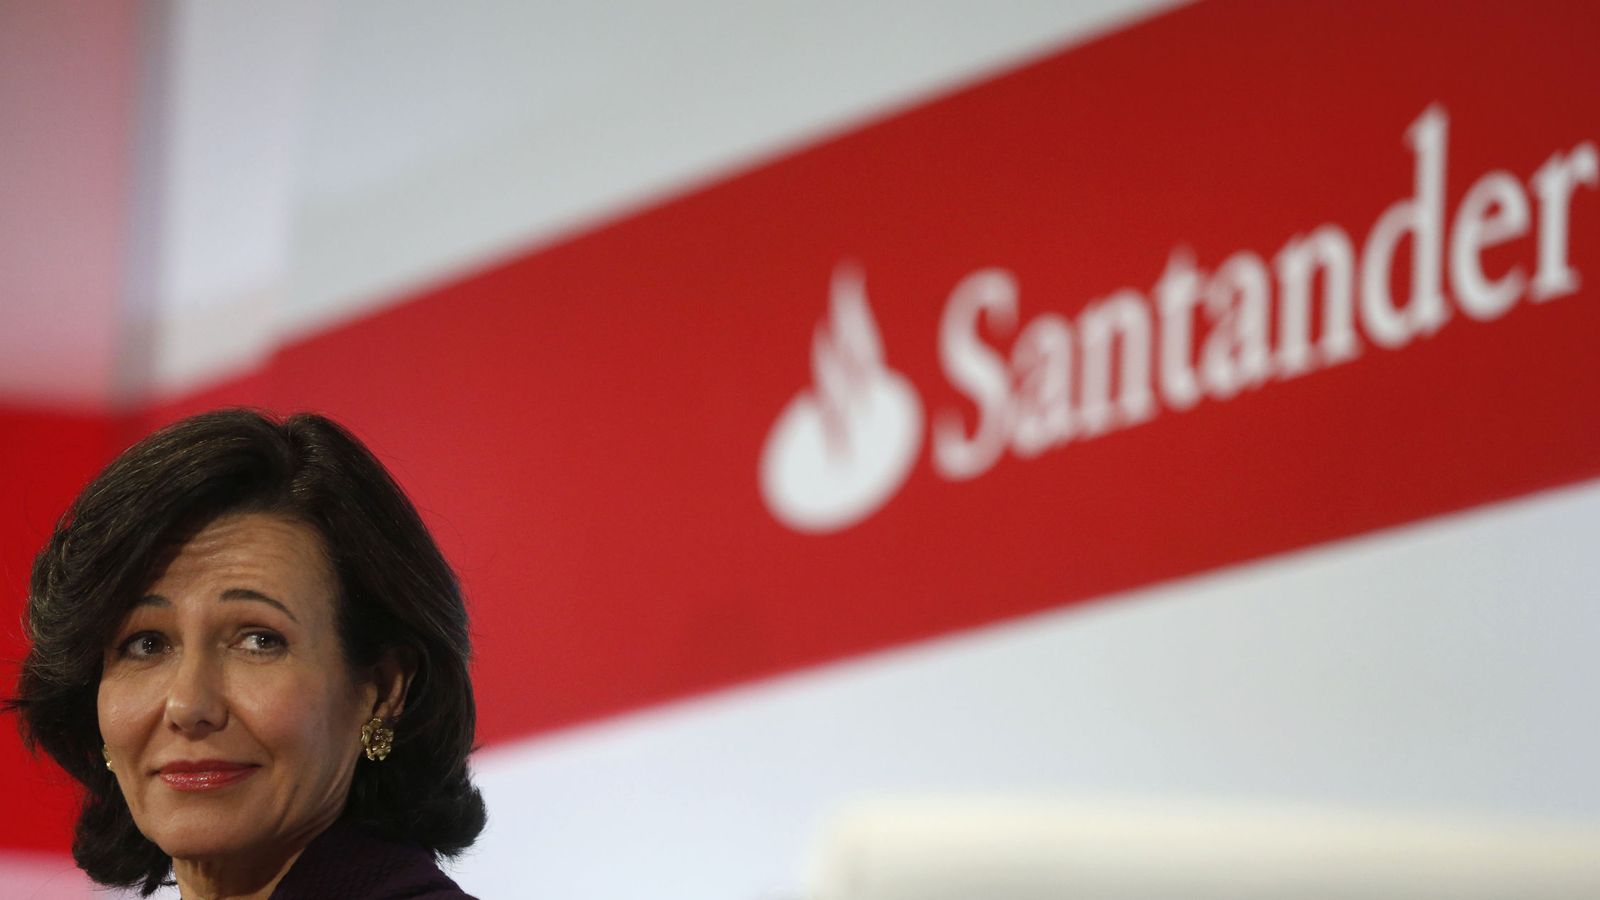 Foto: Ana Botín en la presentación de los resultados del Santander ayer en Boadilla del Monte. (EFE)